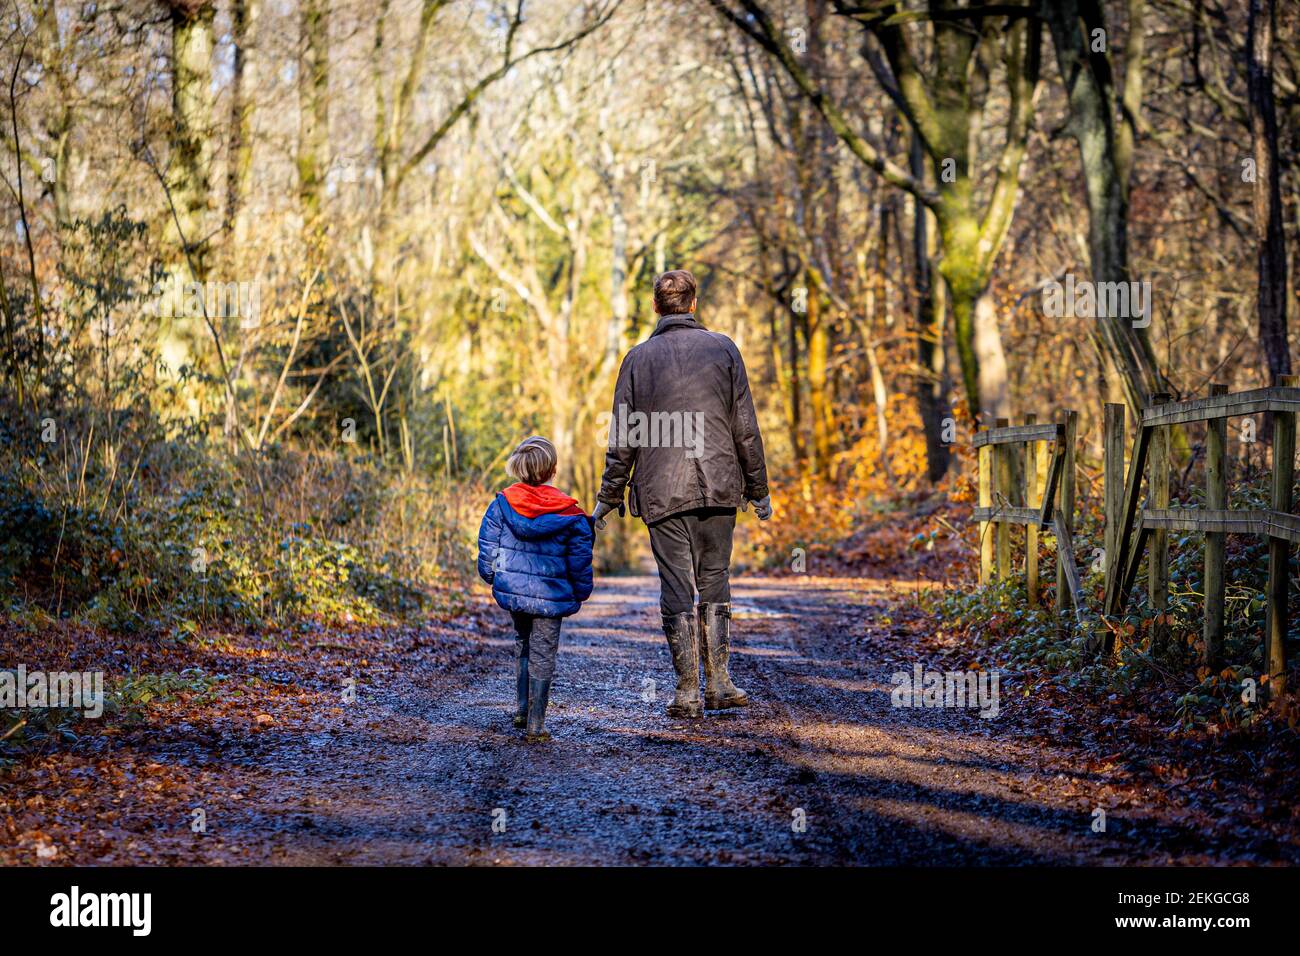 Padre e figlio in una passeggiata nei boschi in inverno - Oxfordshire, Regno Unito Foto Stock